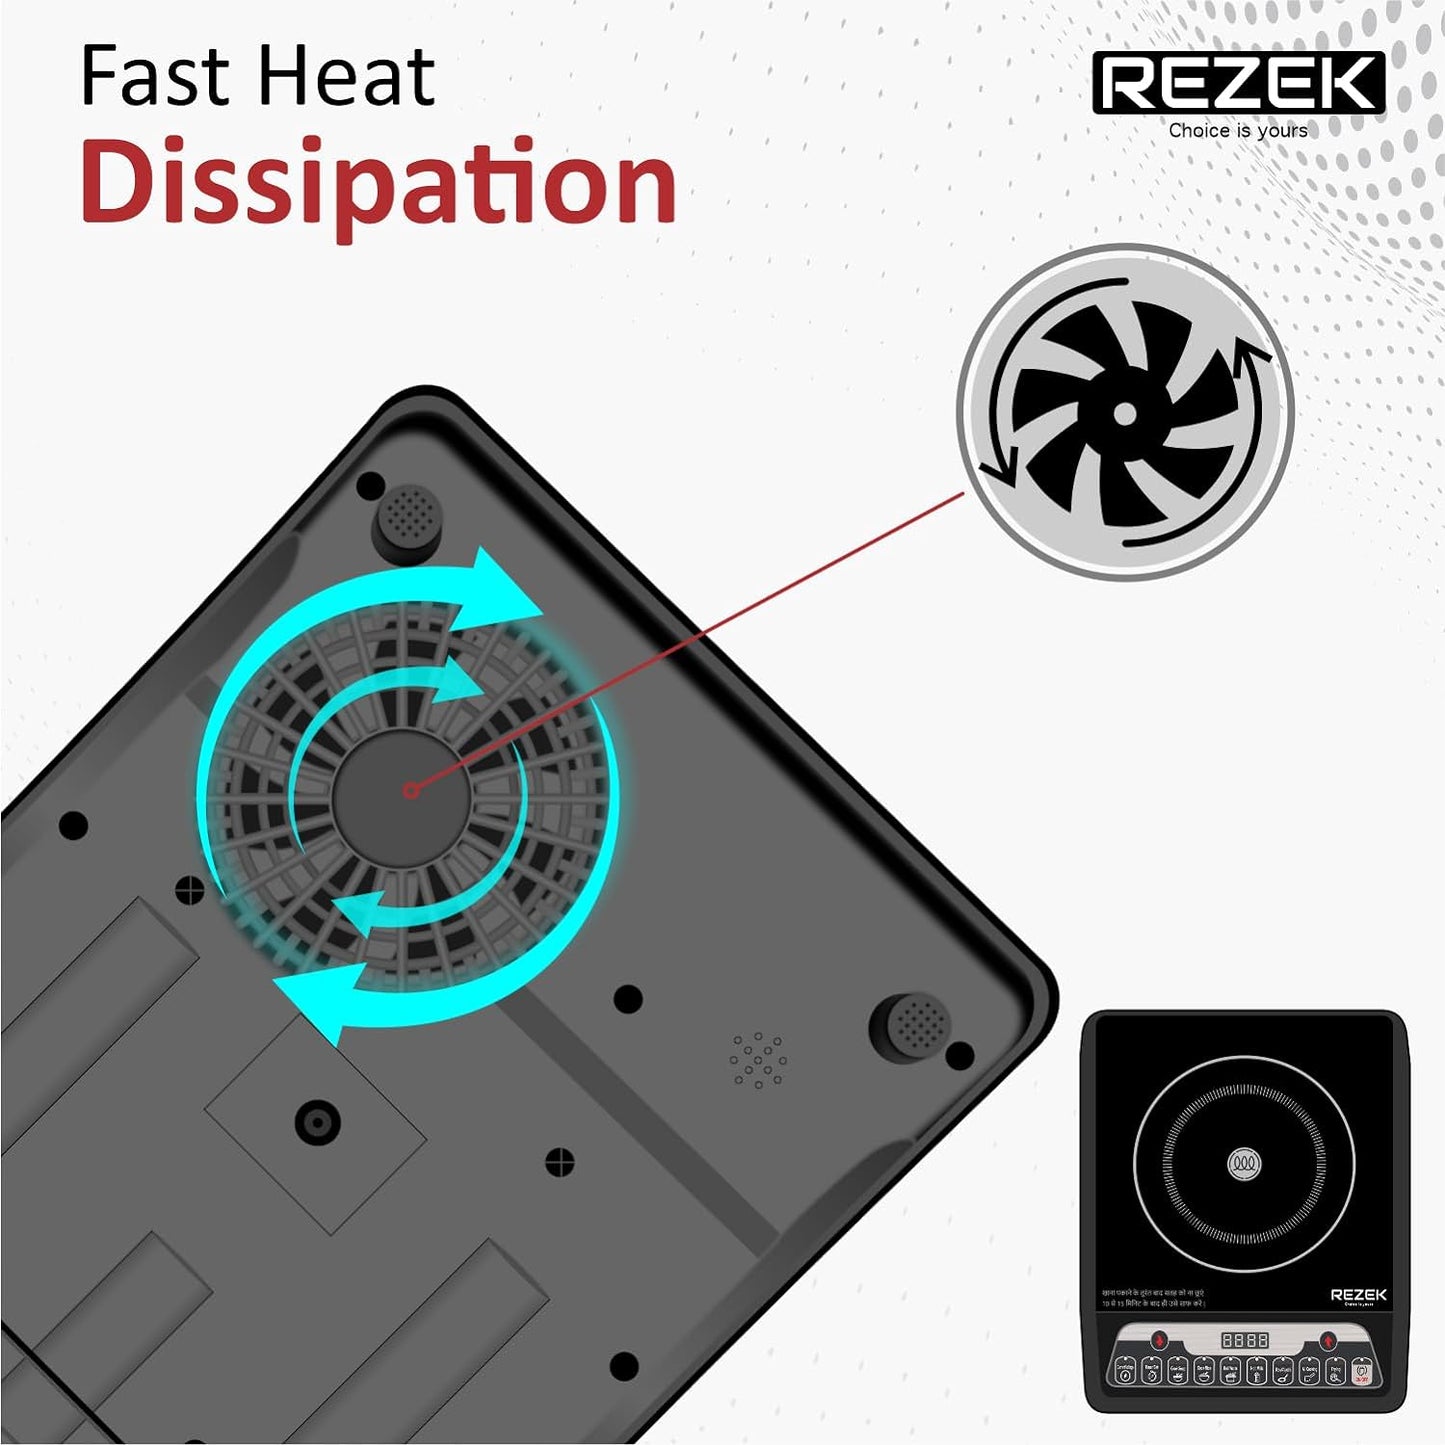 REZEK 2000 Watt Induction Cooktop with Auto Shut-Off & Over-Heat Protection